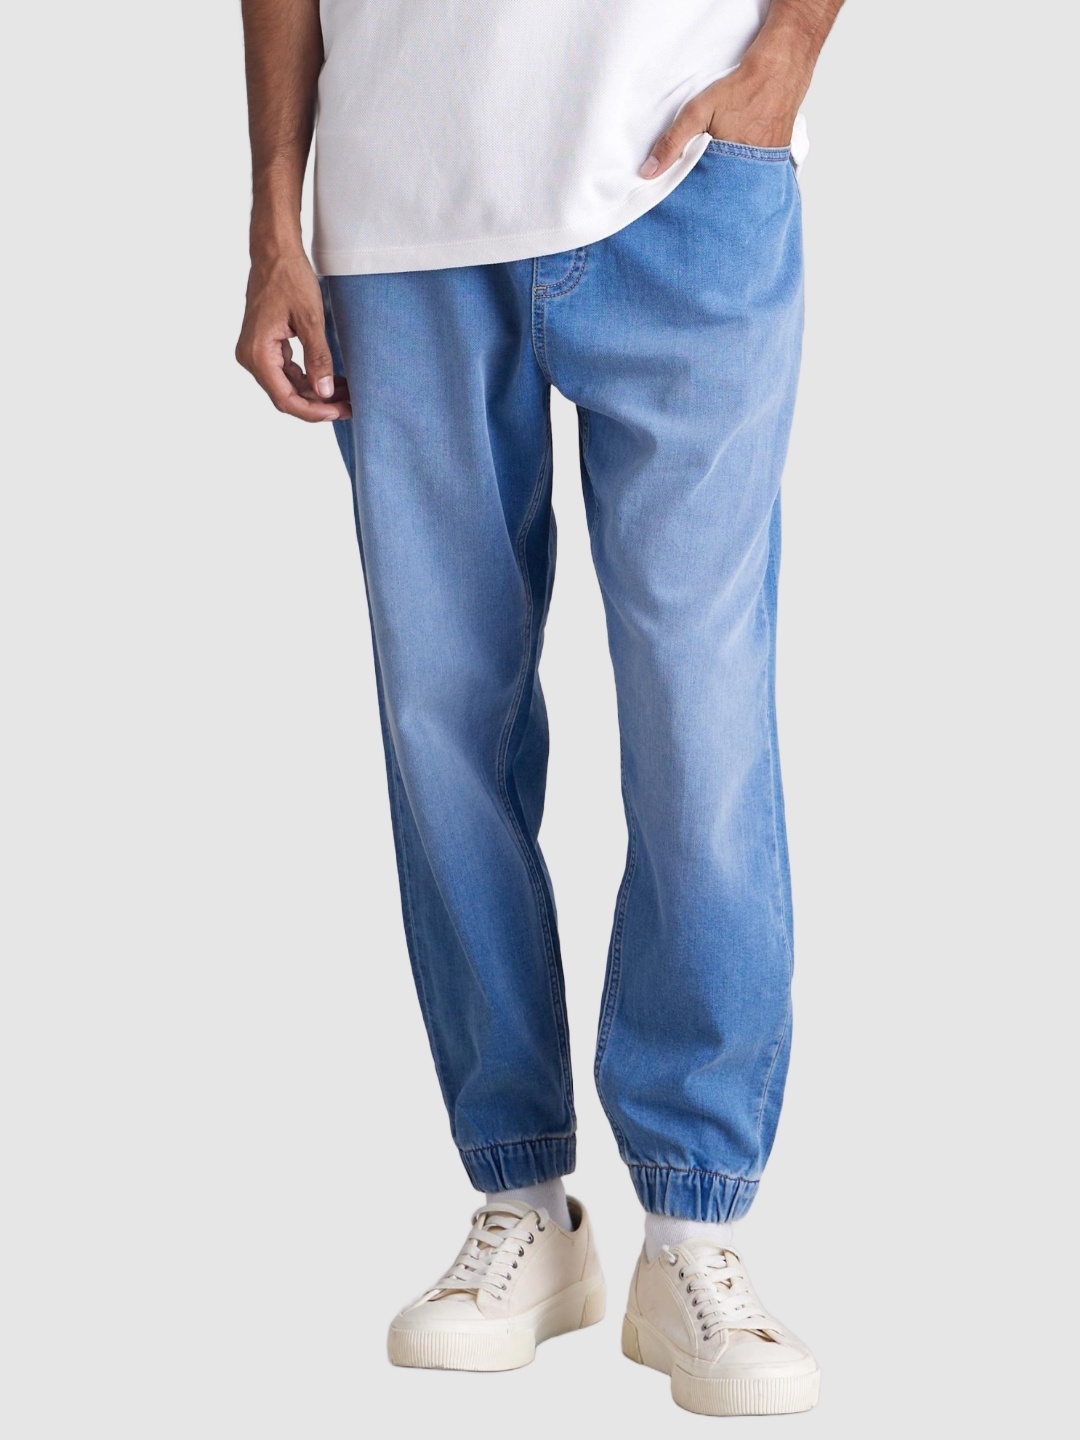 Men's Blue Polycotton Solid Joggers Jeans